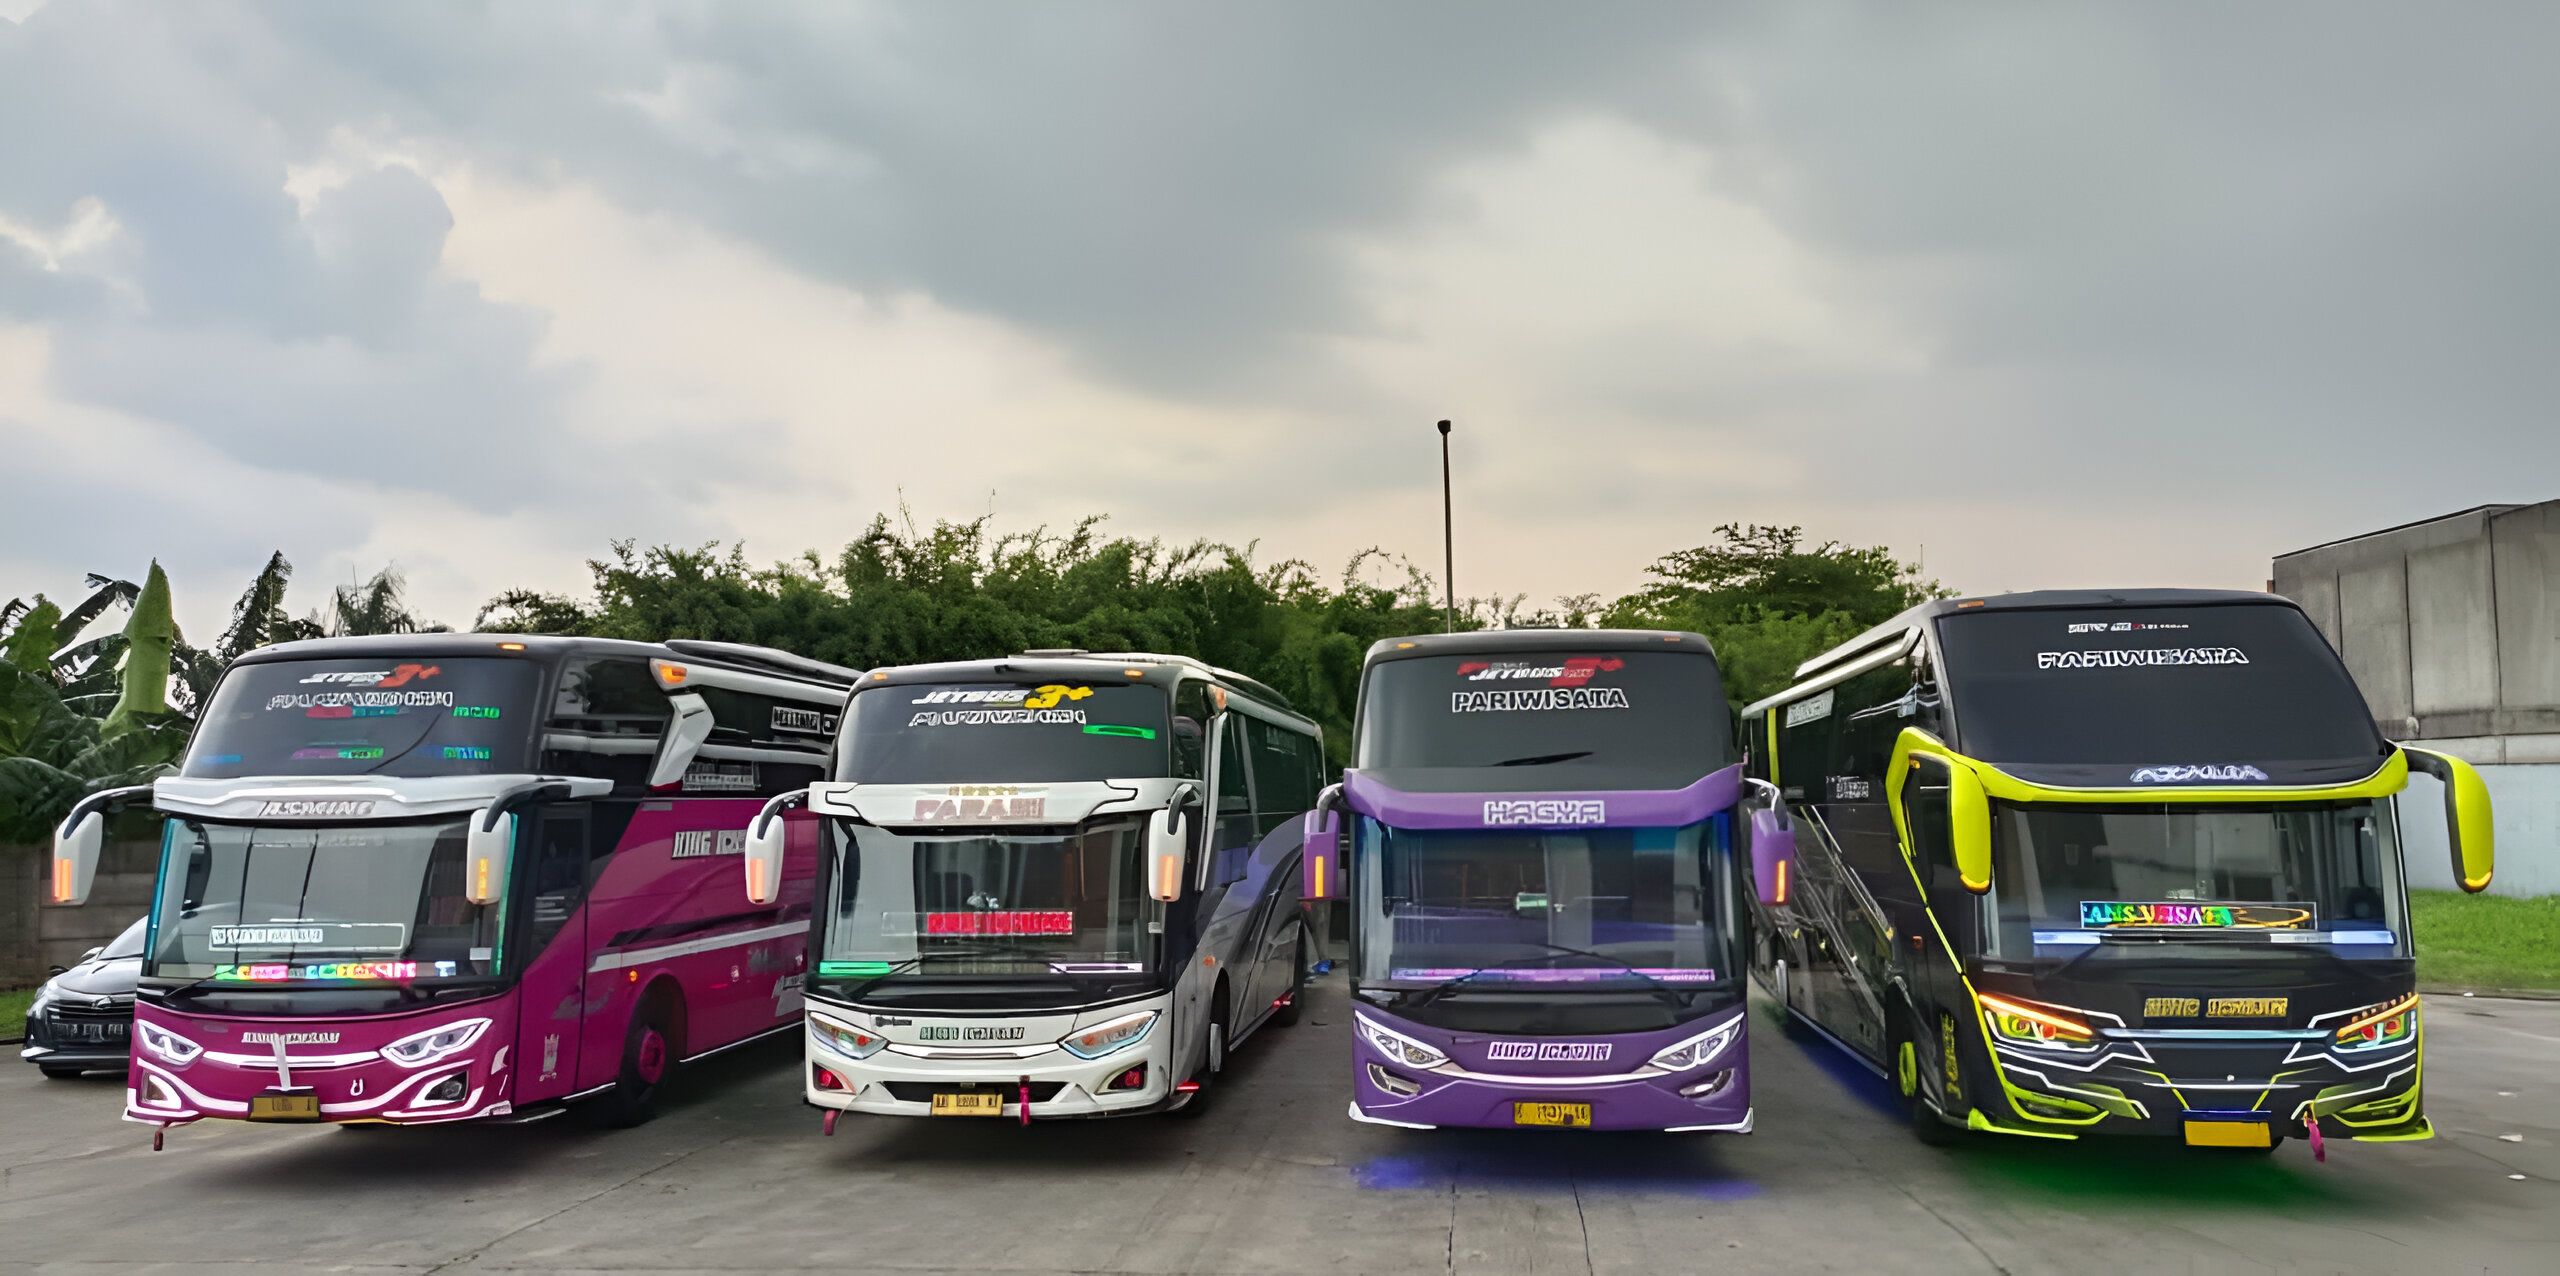 Libur Idul Adha, Menhub Minta Masyarakat yang Ingin Liburan Cek Kelaikan Bus Pariwisata di Aplikasi MitraDarat